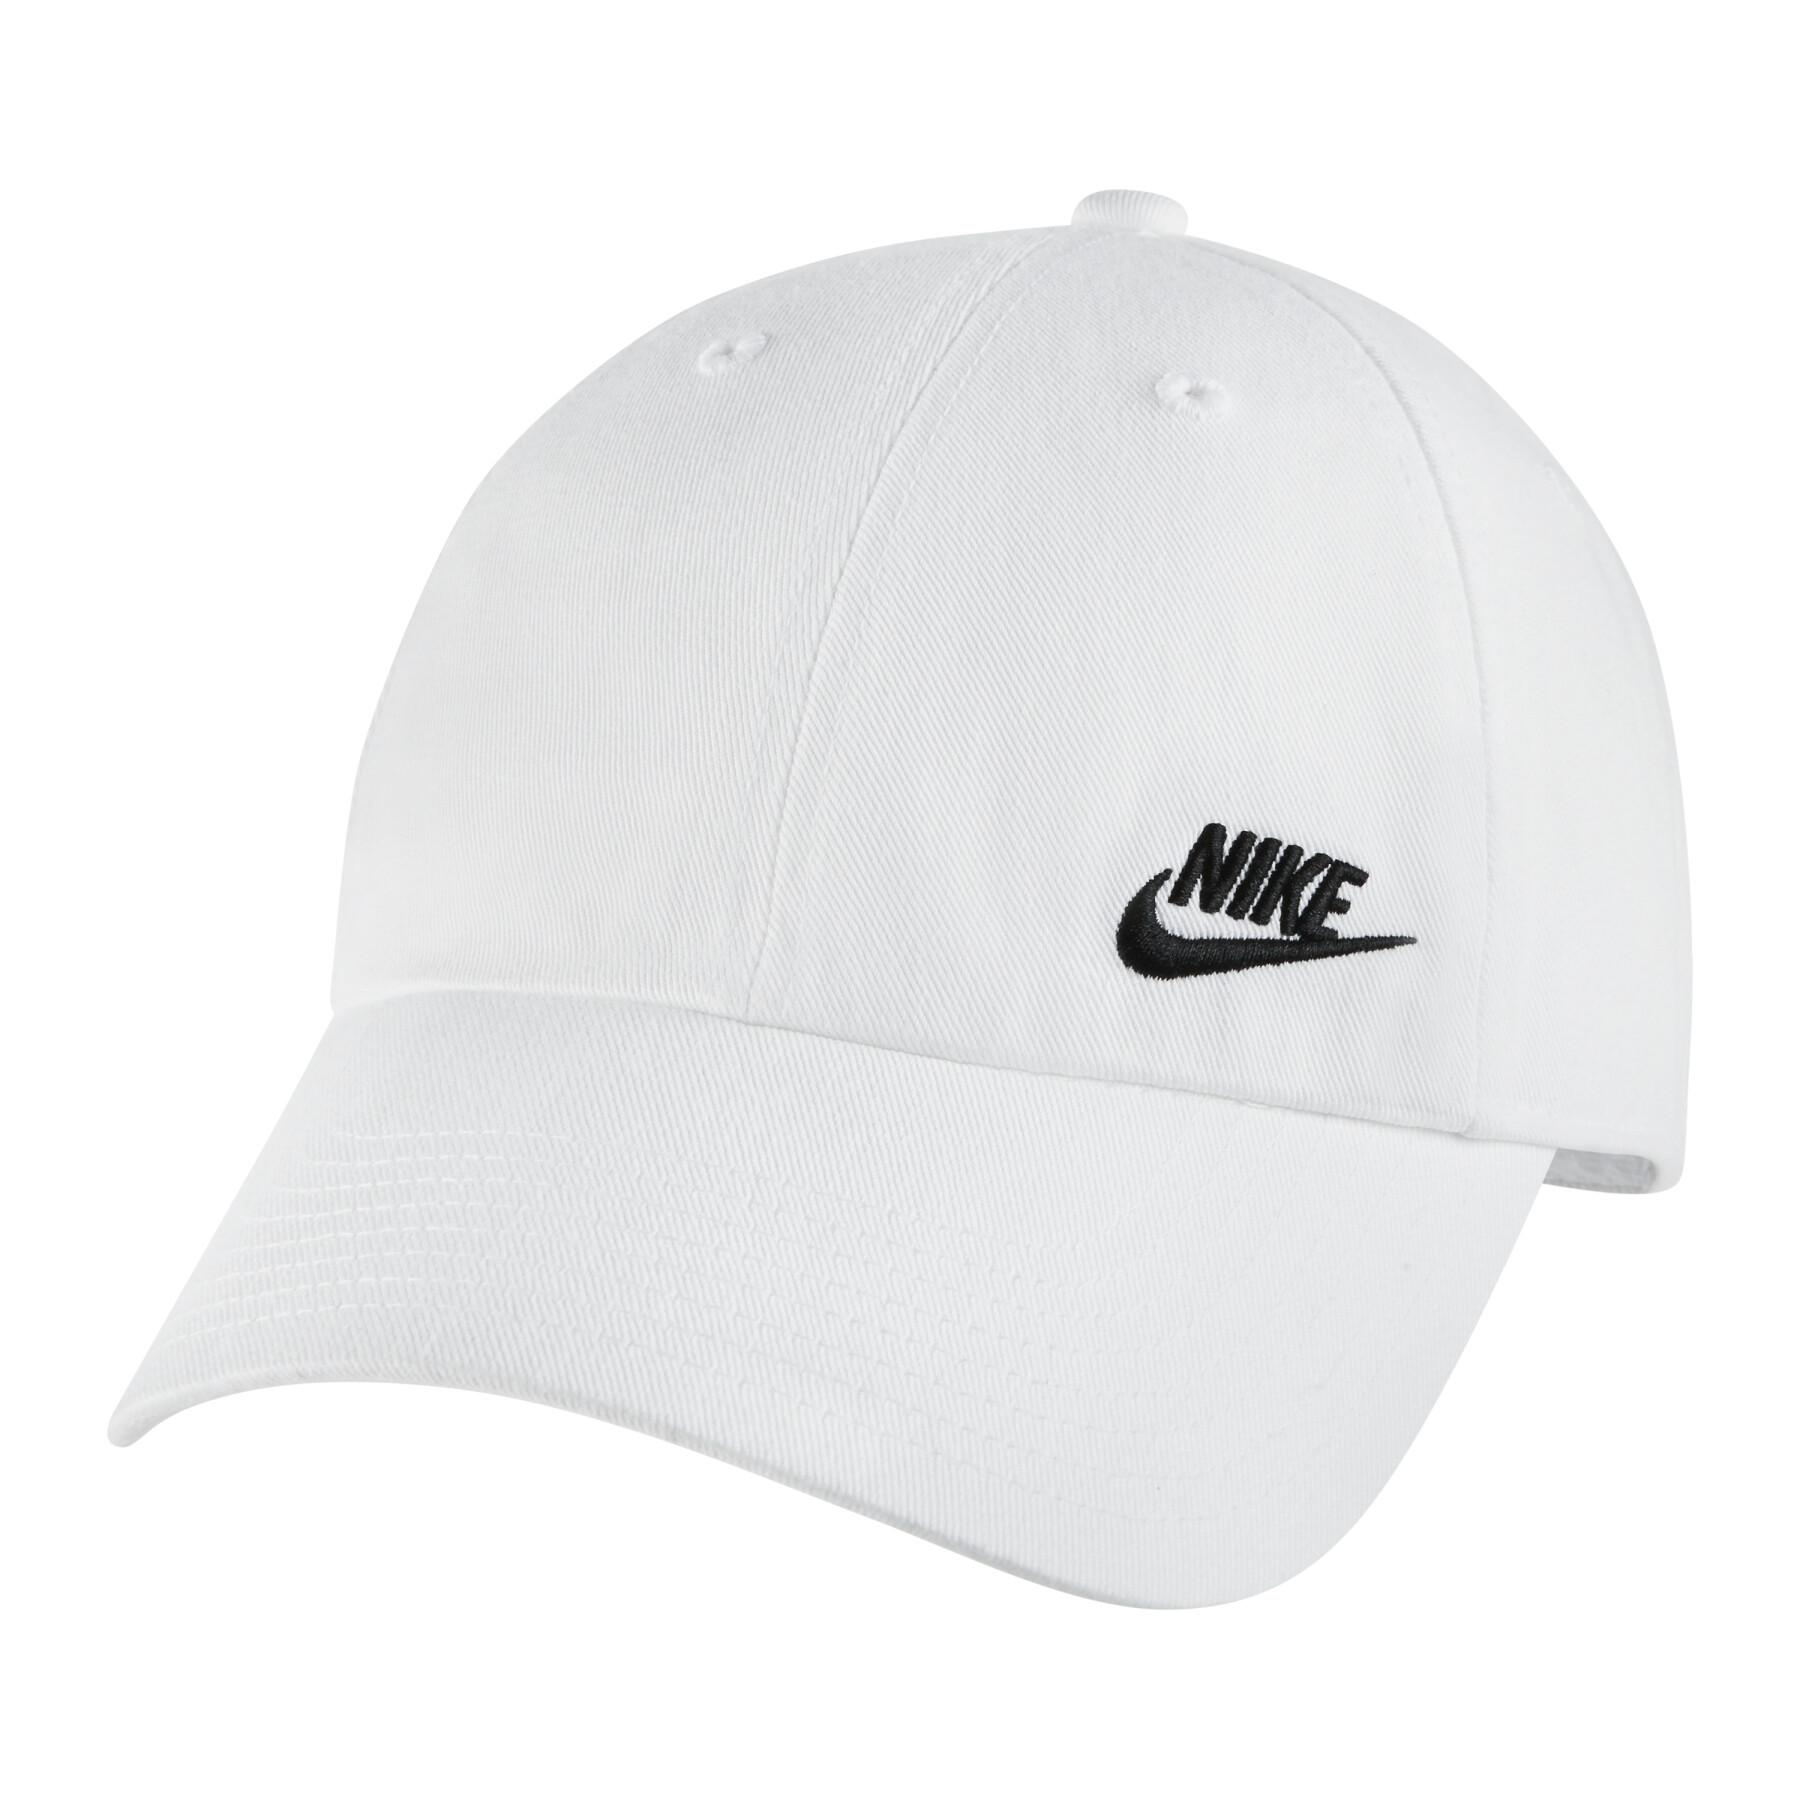 Women's cap Nike Sportswear Heritage 86